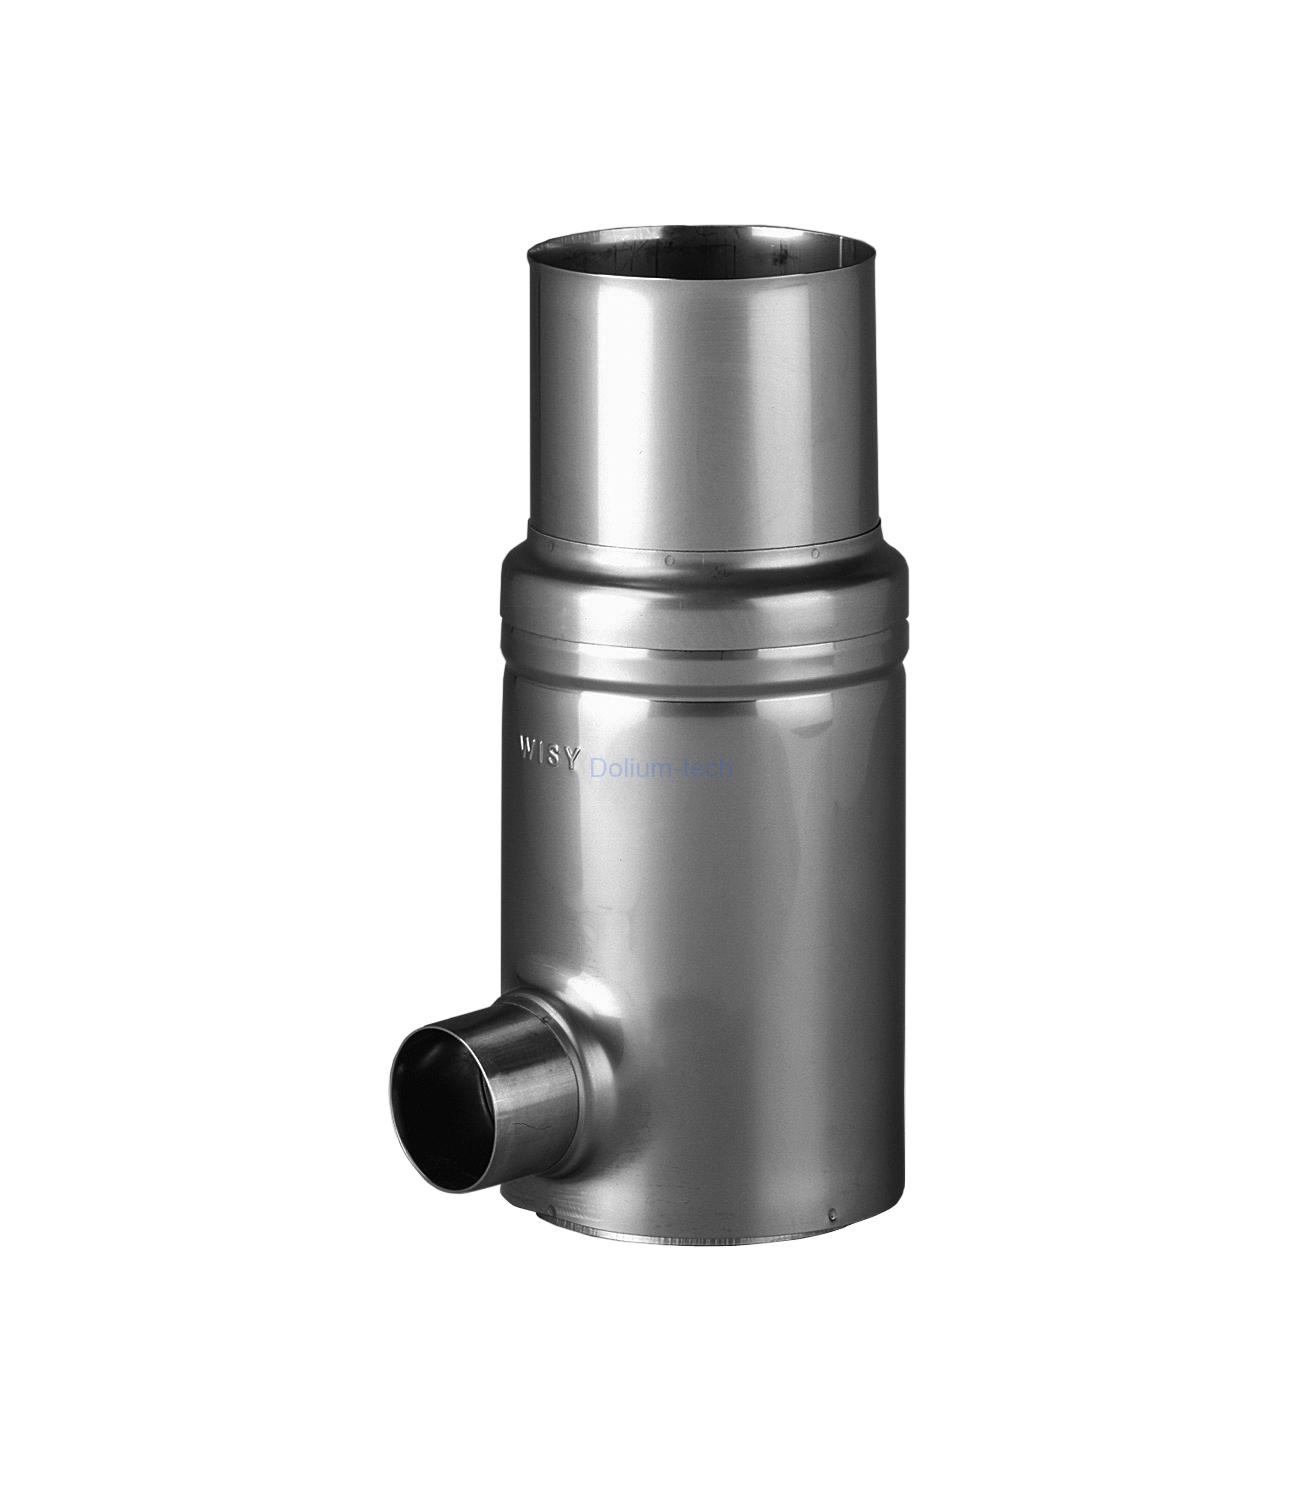 Okapový filtr GRS 110 VA-nerez, filtrační vložka nerez, jemnost 0,44 mm